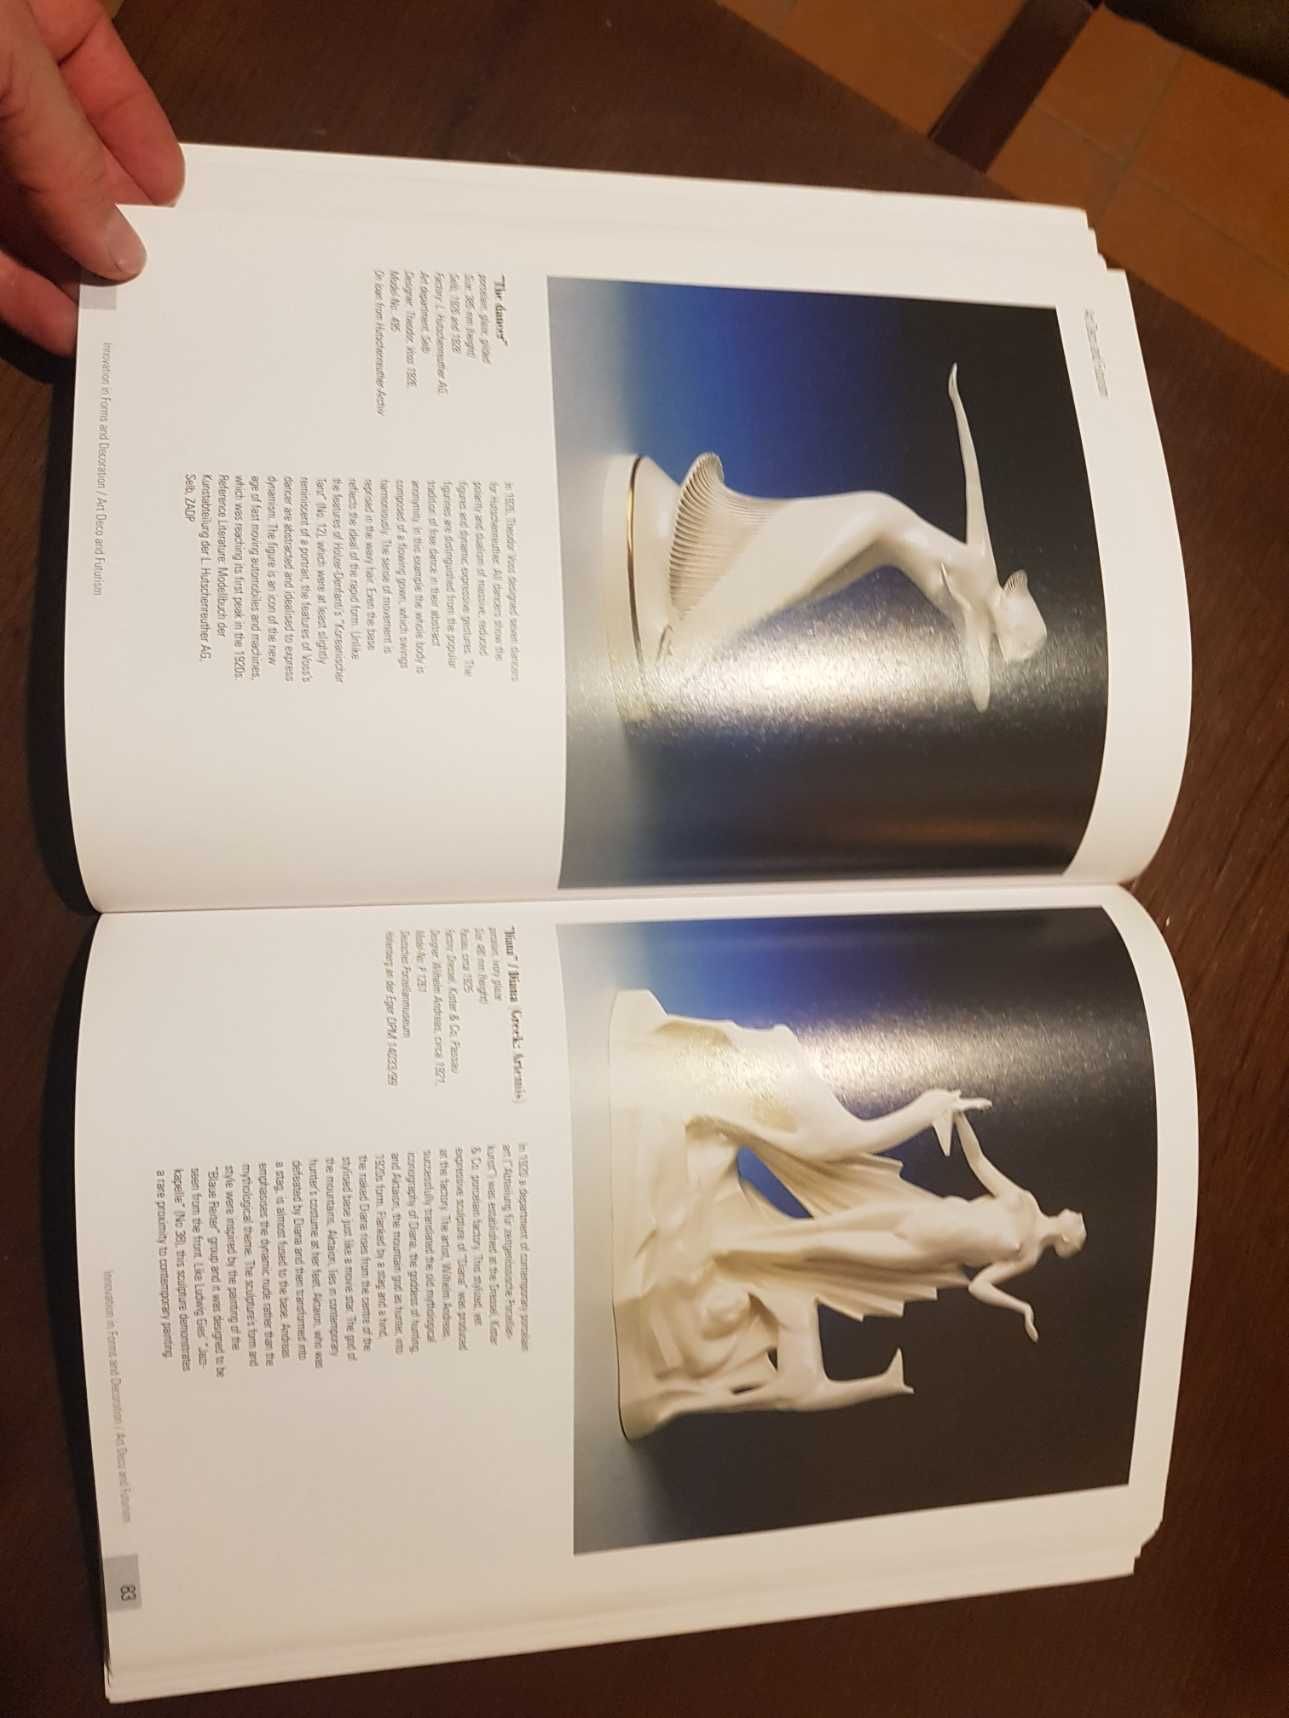 Livro cerâmica "ceramic culture innovation 1851 / 2000"